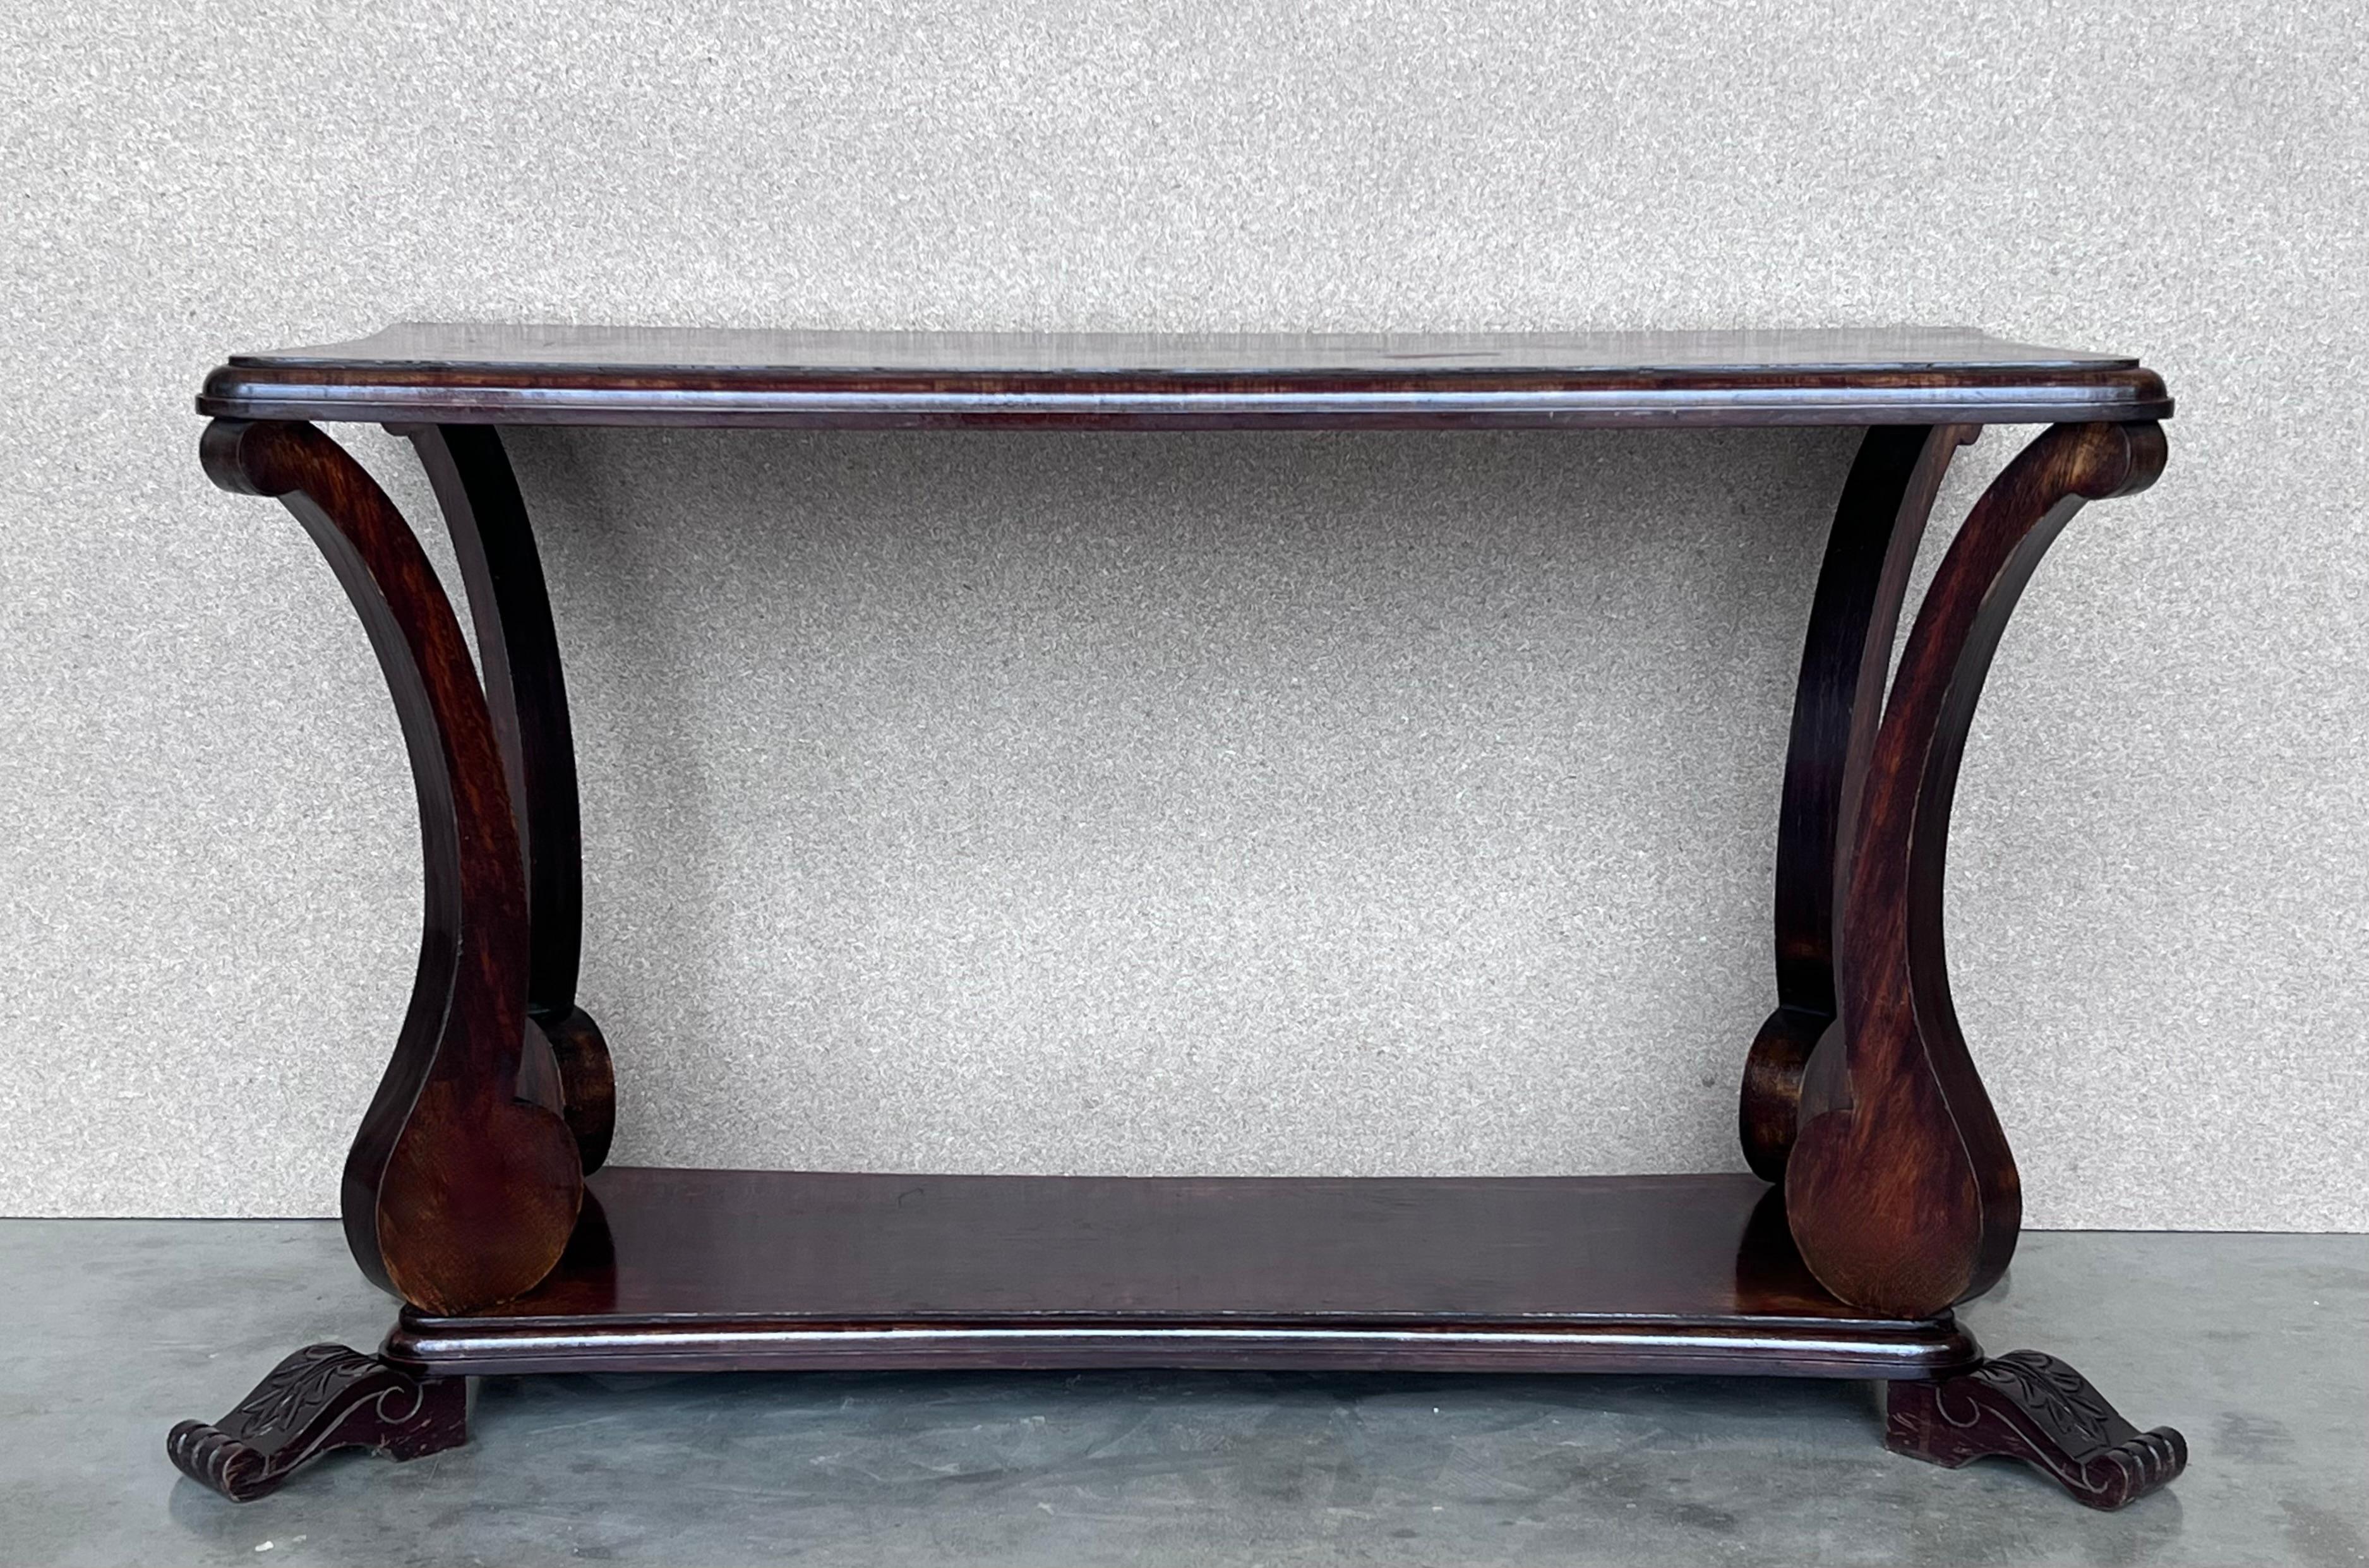 Belle table basse ou table d'appoint rectangulaire, en acajou massif, avec pieds griffes sculptés et étagère basse.